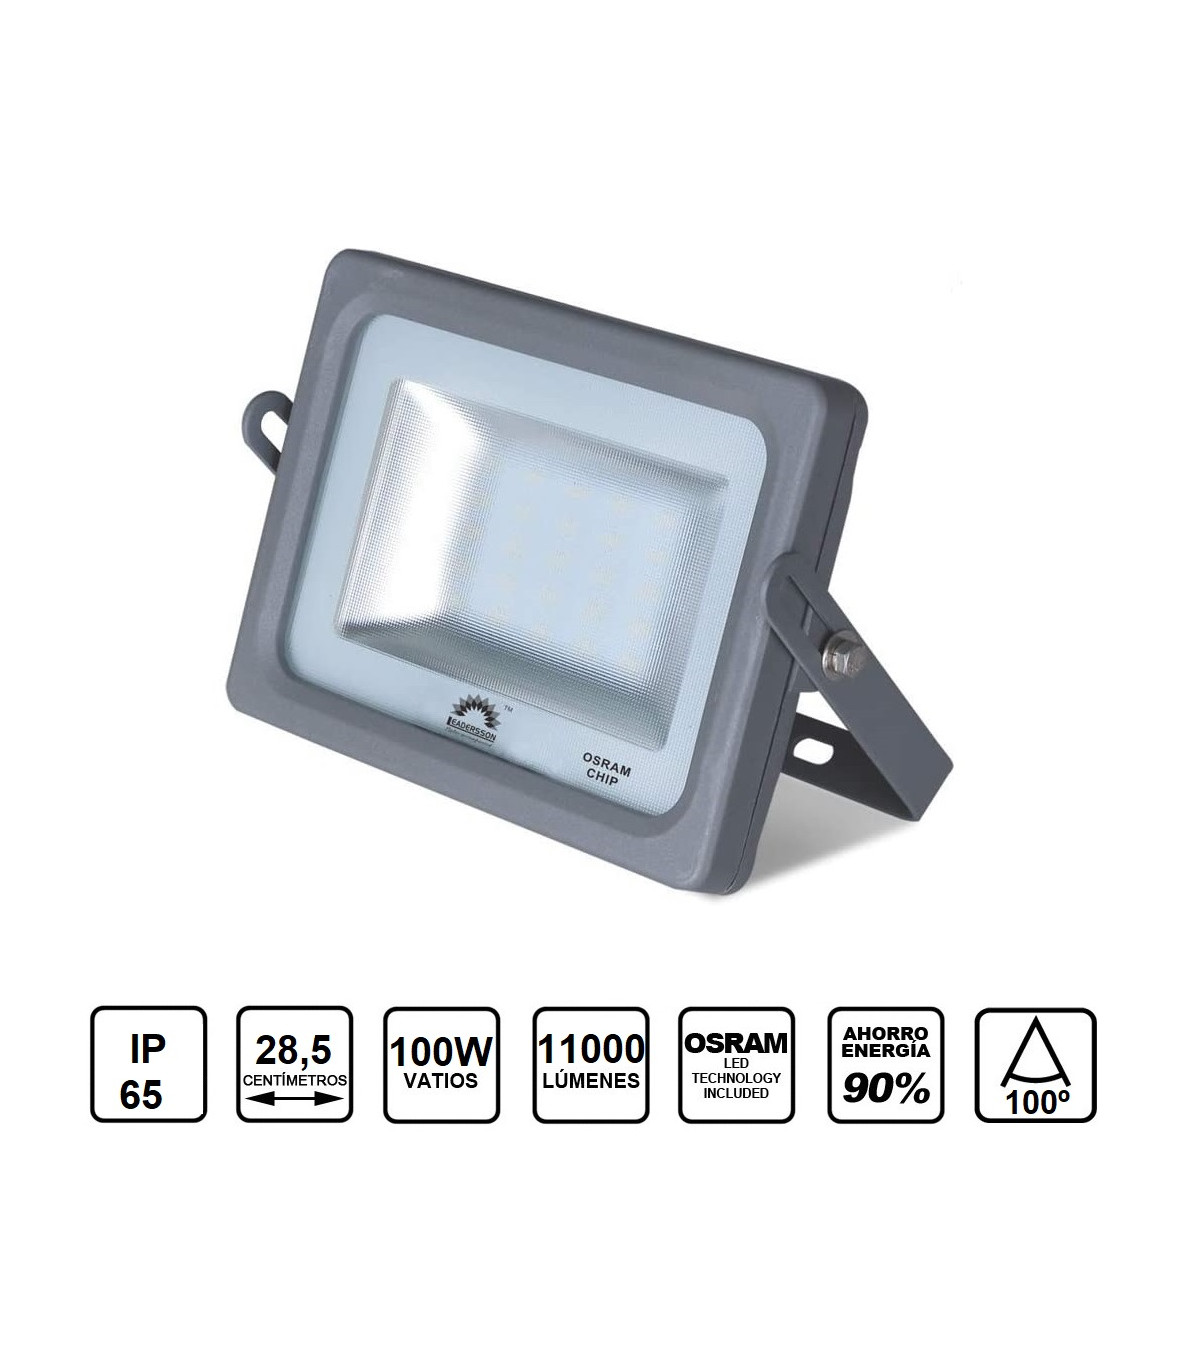 Proyector LED de exterior 100W IP65 7847 lúmenes | Focos LED B·LED